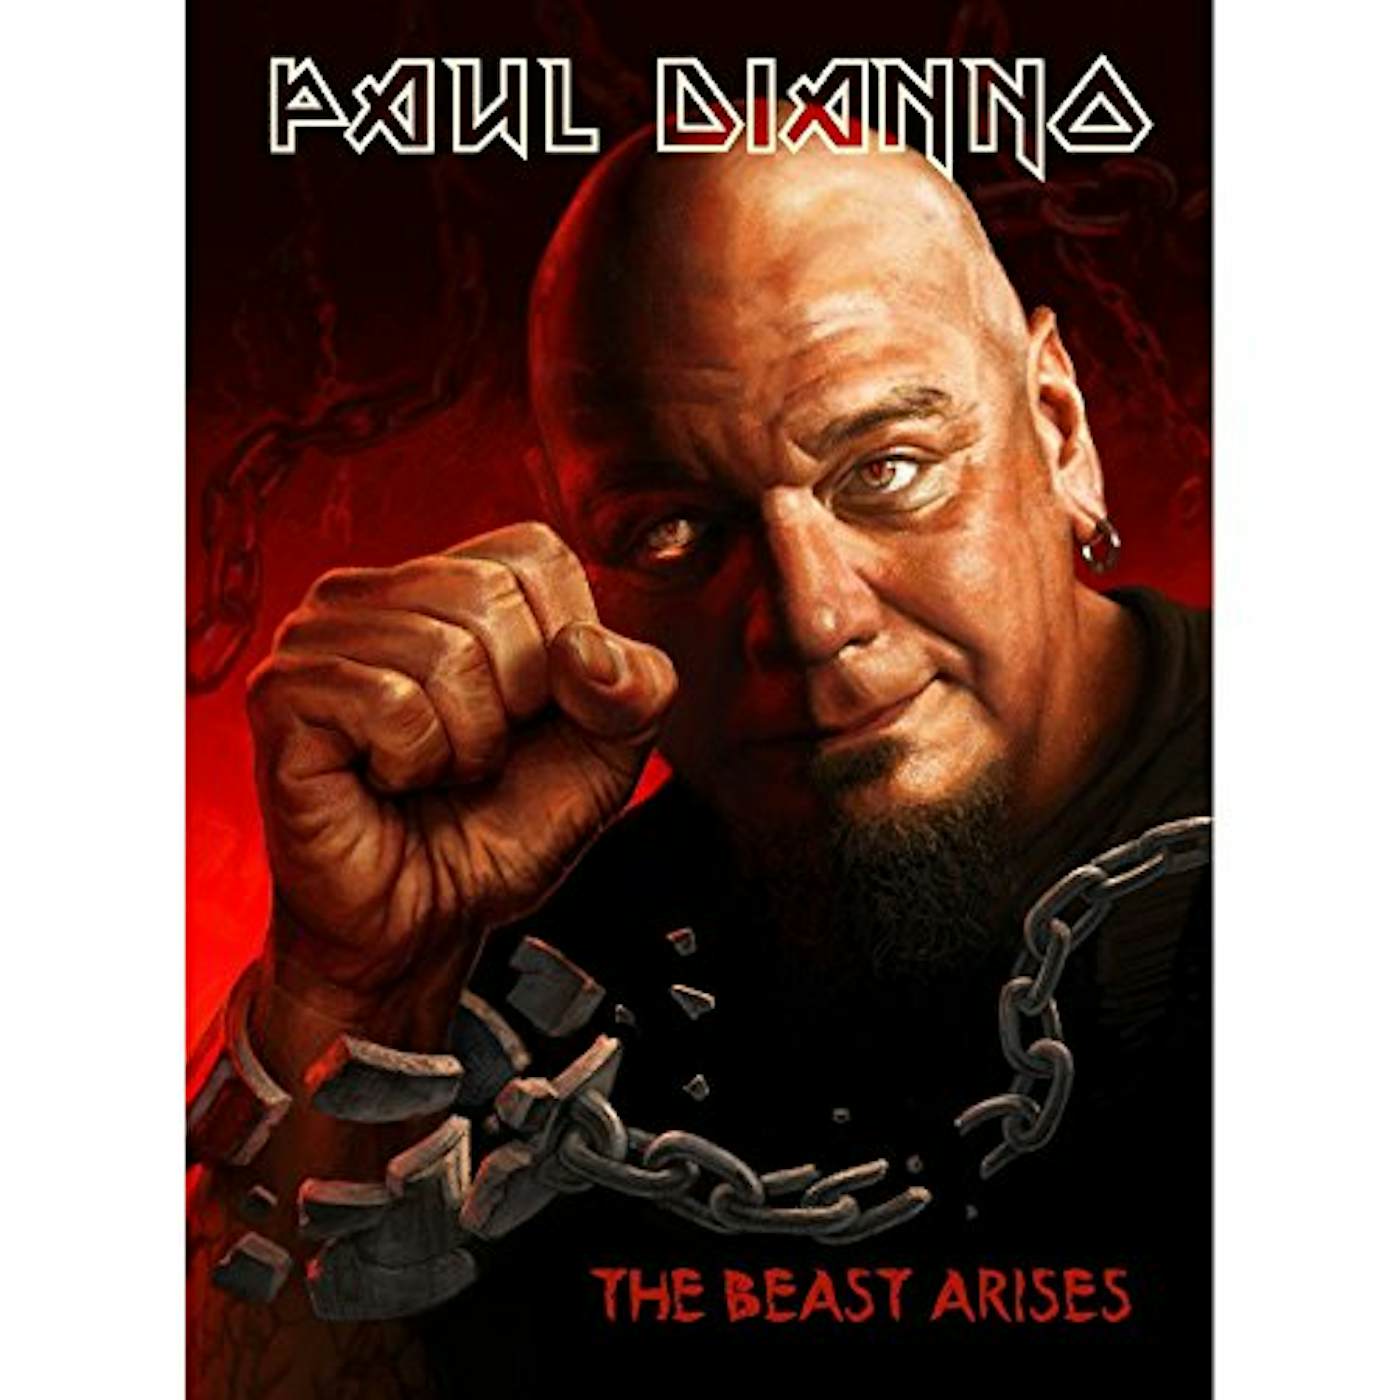 Paul Di'Anno BEAST ARISES DVD